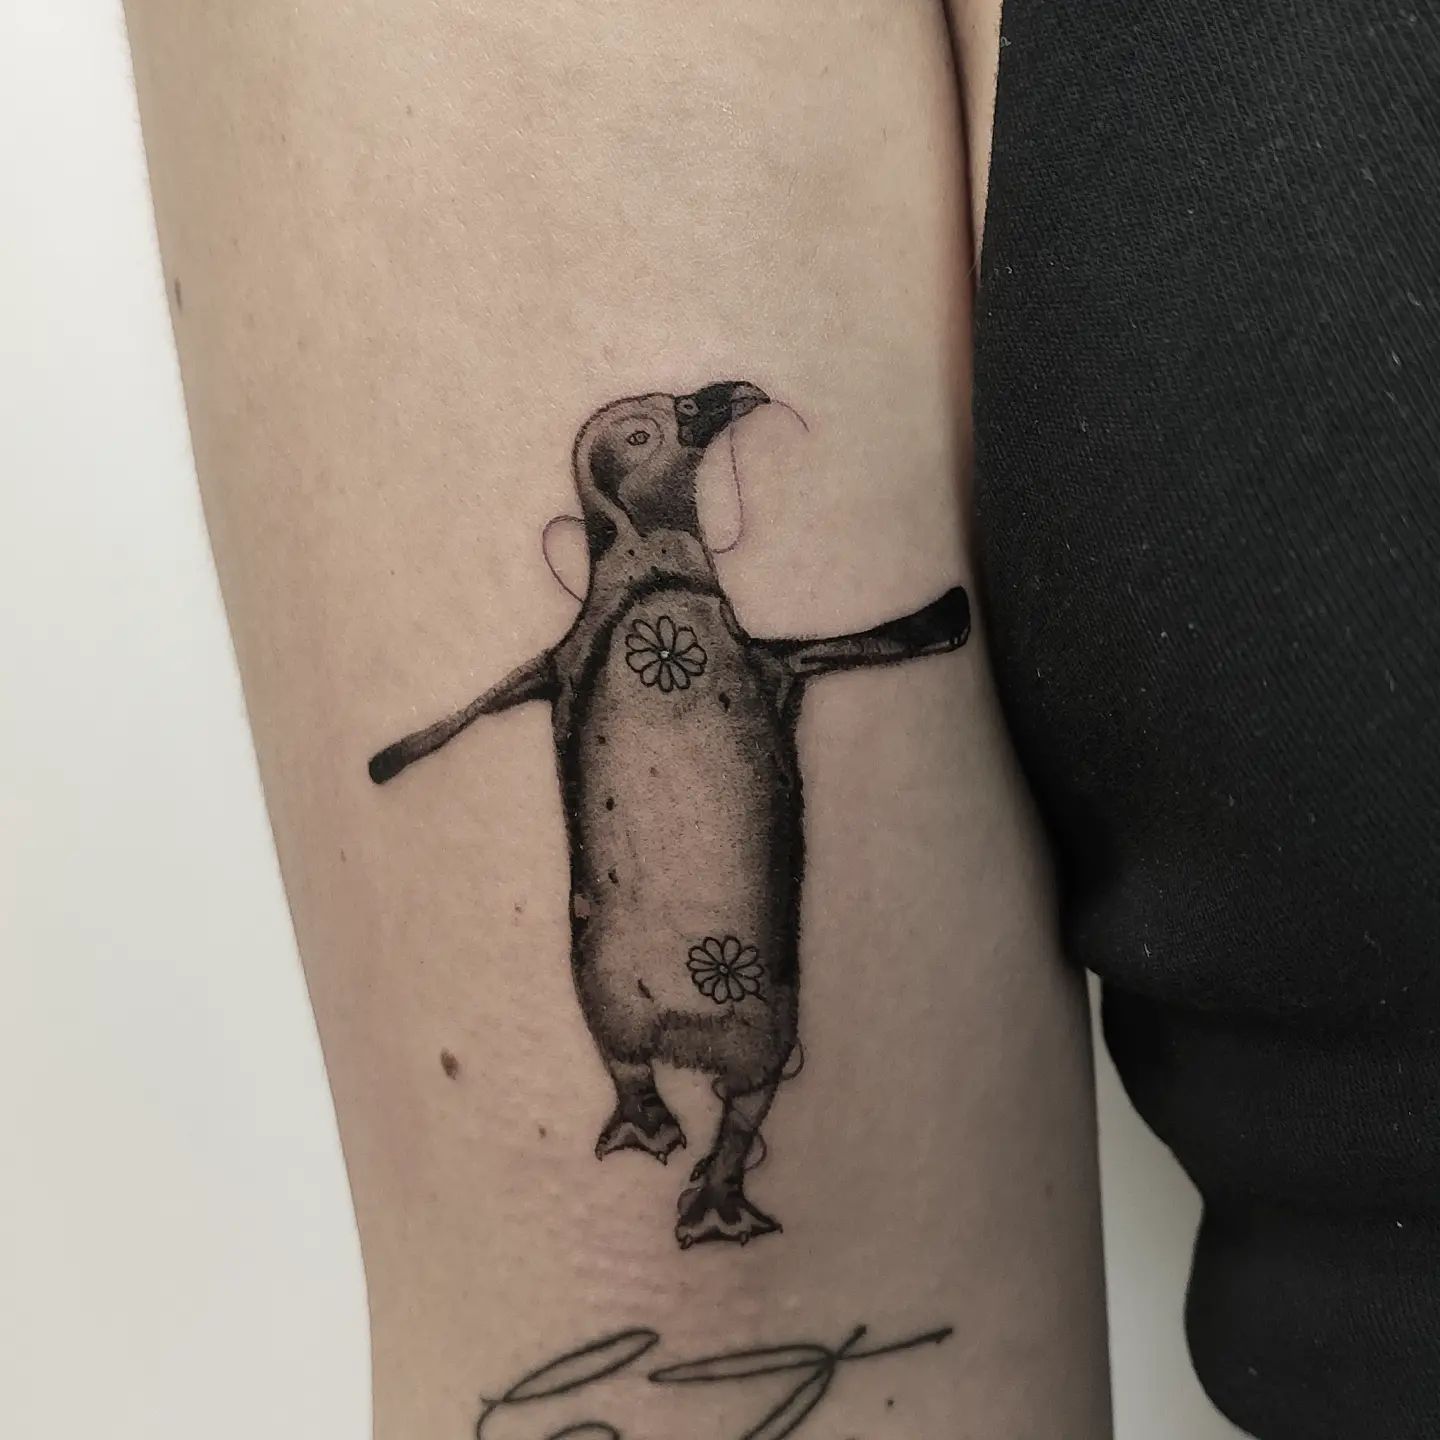 Tatuaje de pingüino miniatura.